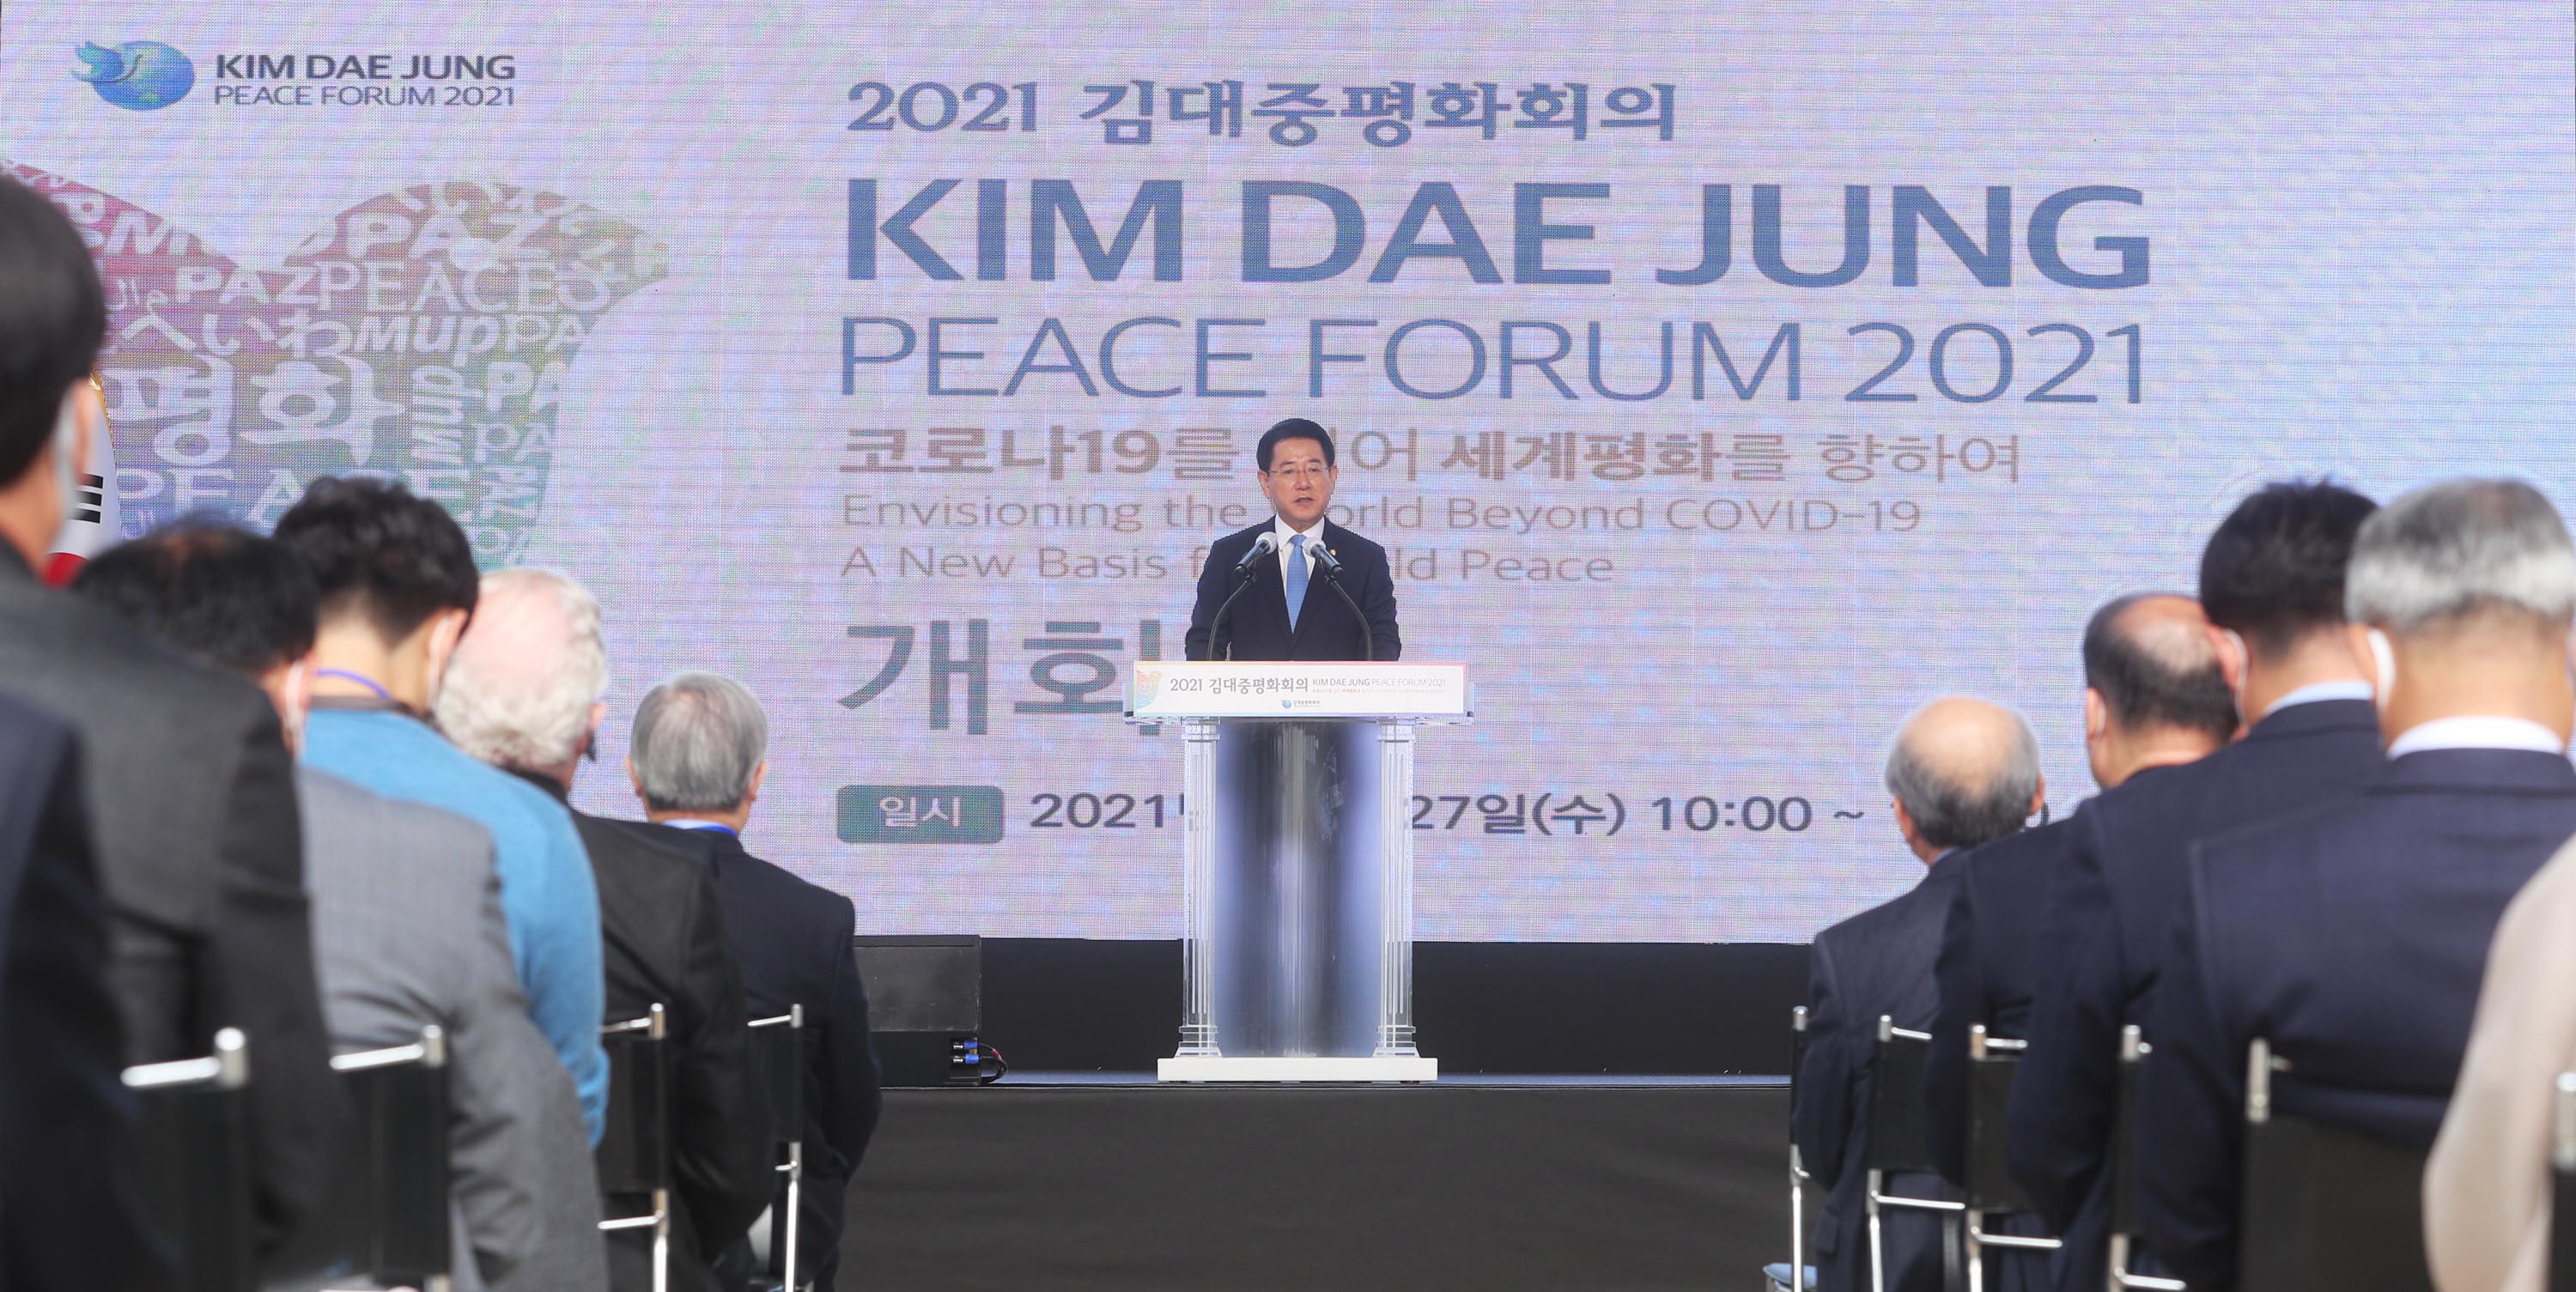 2021 김대중평화회의 개회식1